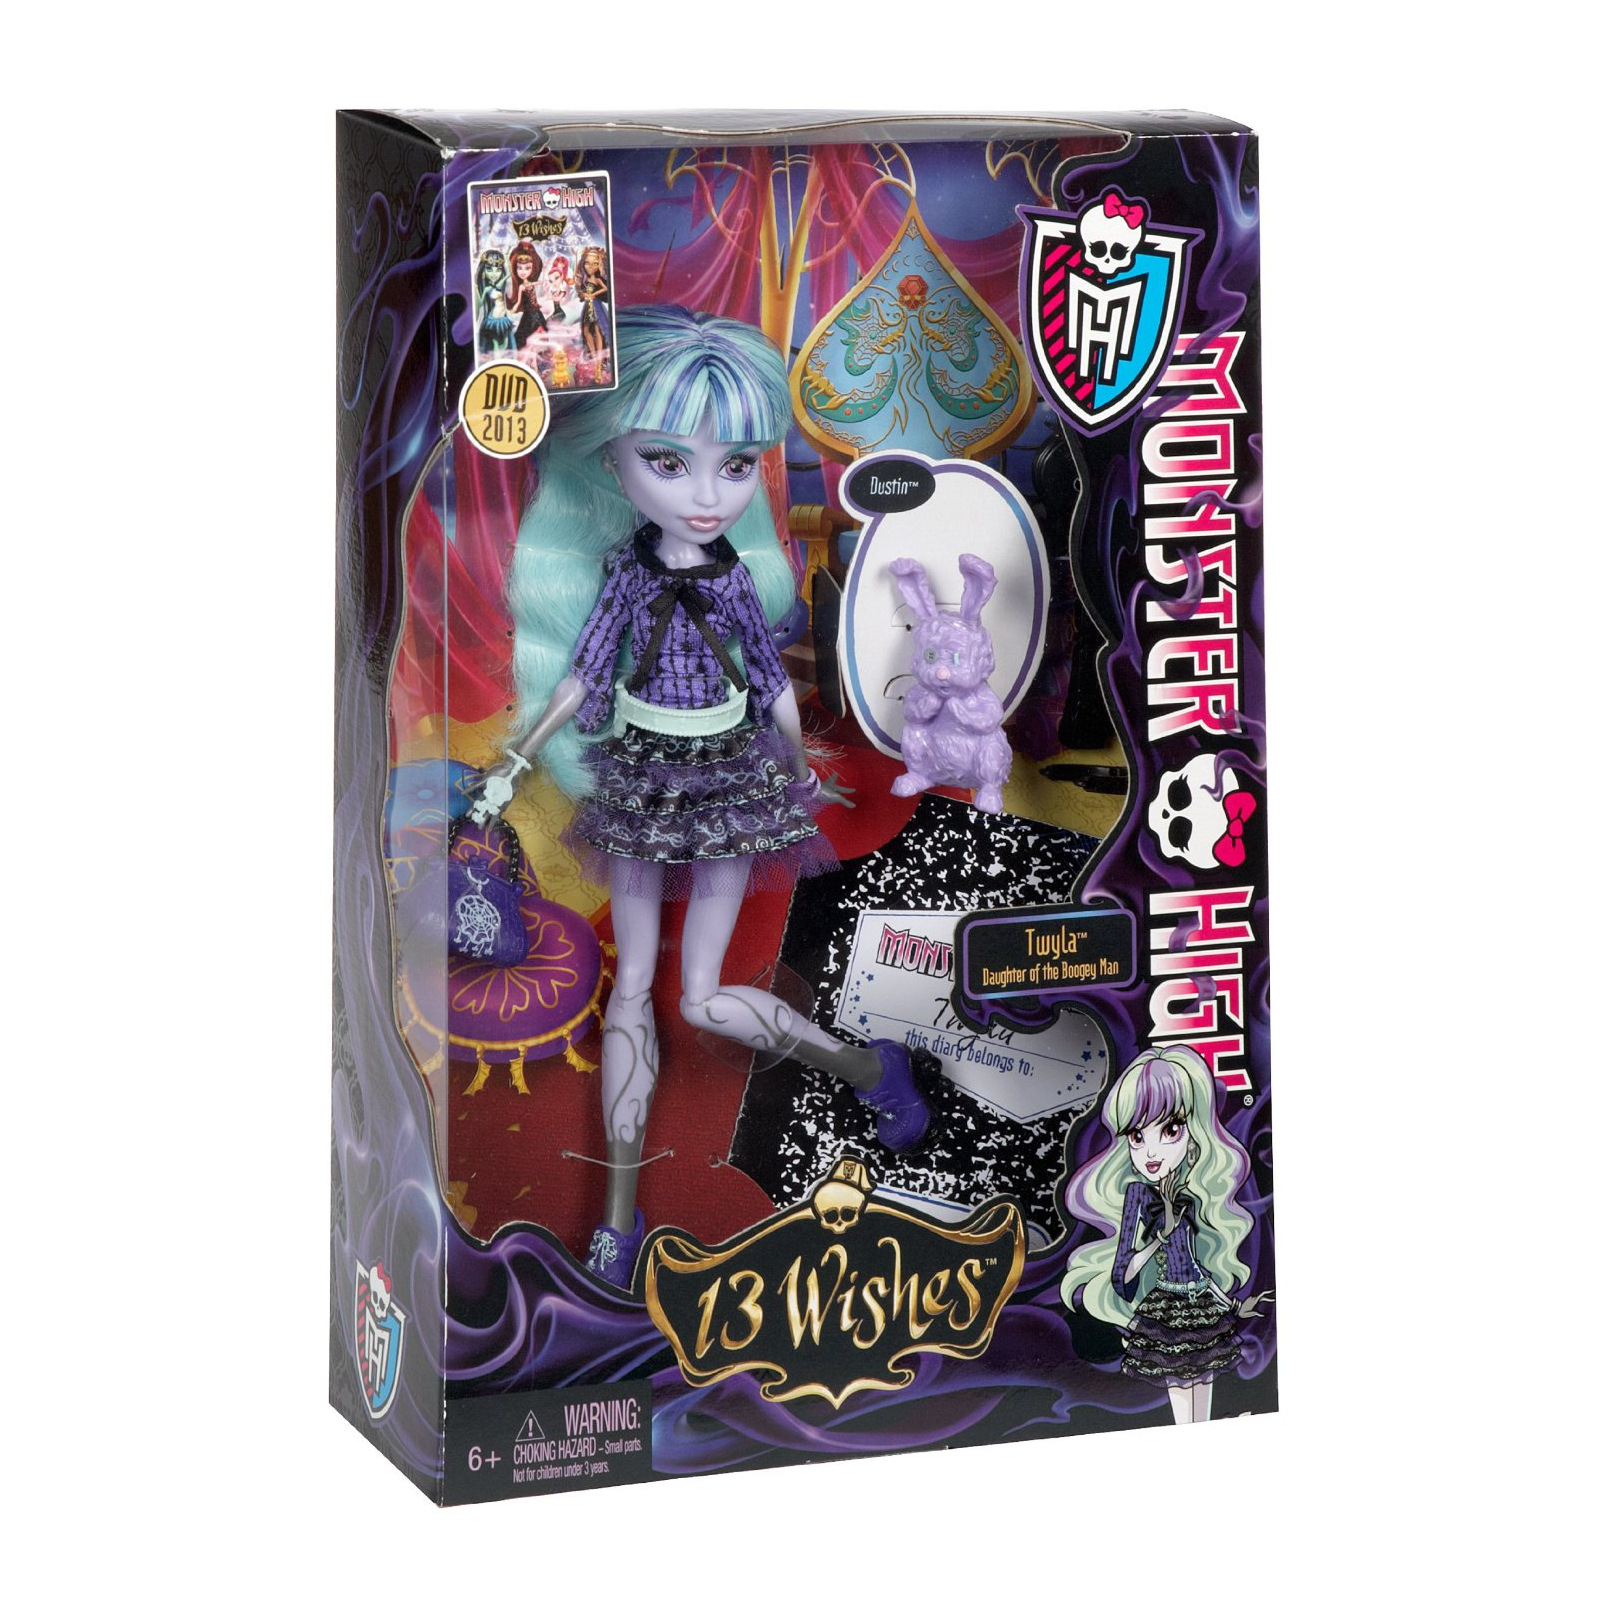 Кукла Monster High Твилла Твилла серии 13 желаний (BBK06-3) изображение 6